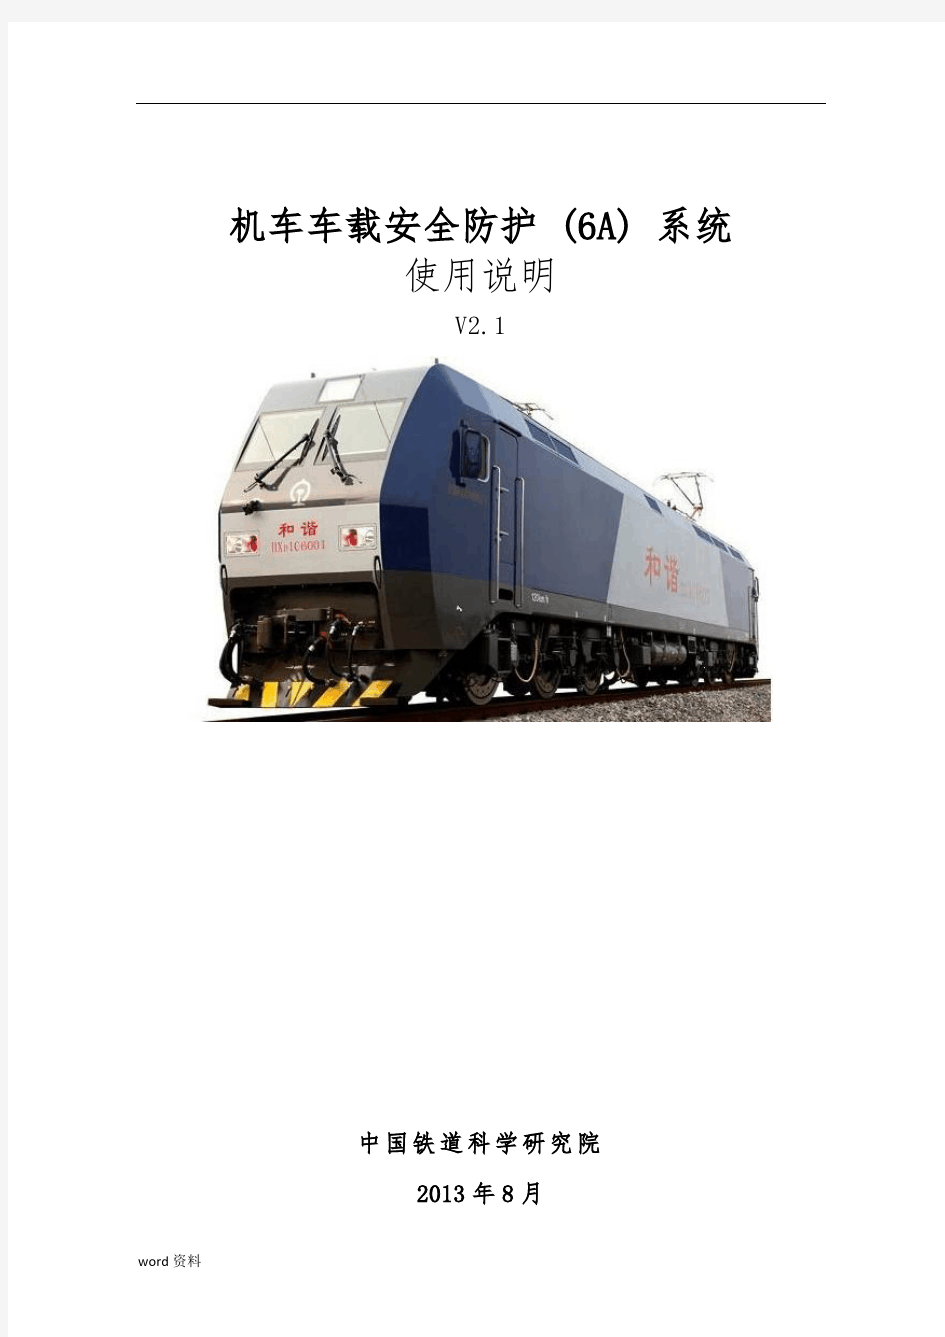 HXD1C机车车载安全防护(6A)系统使用说明